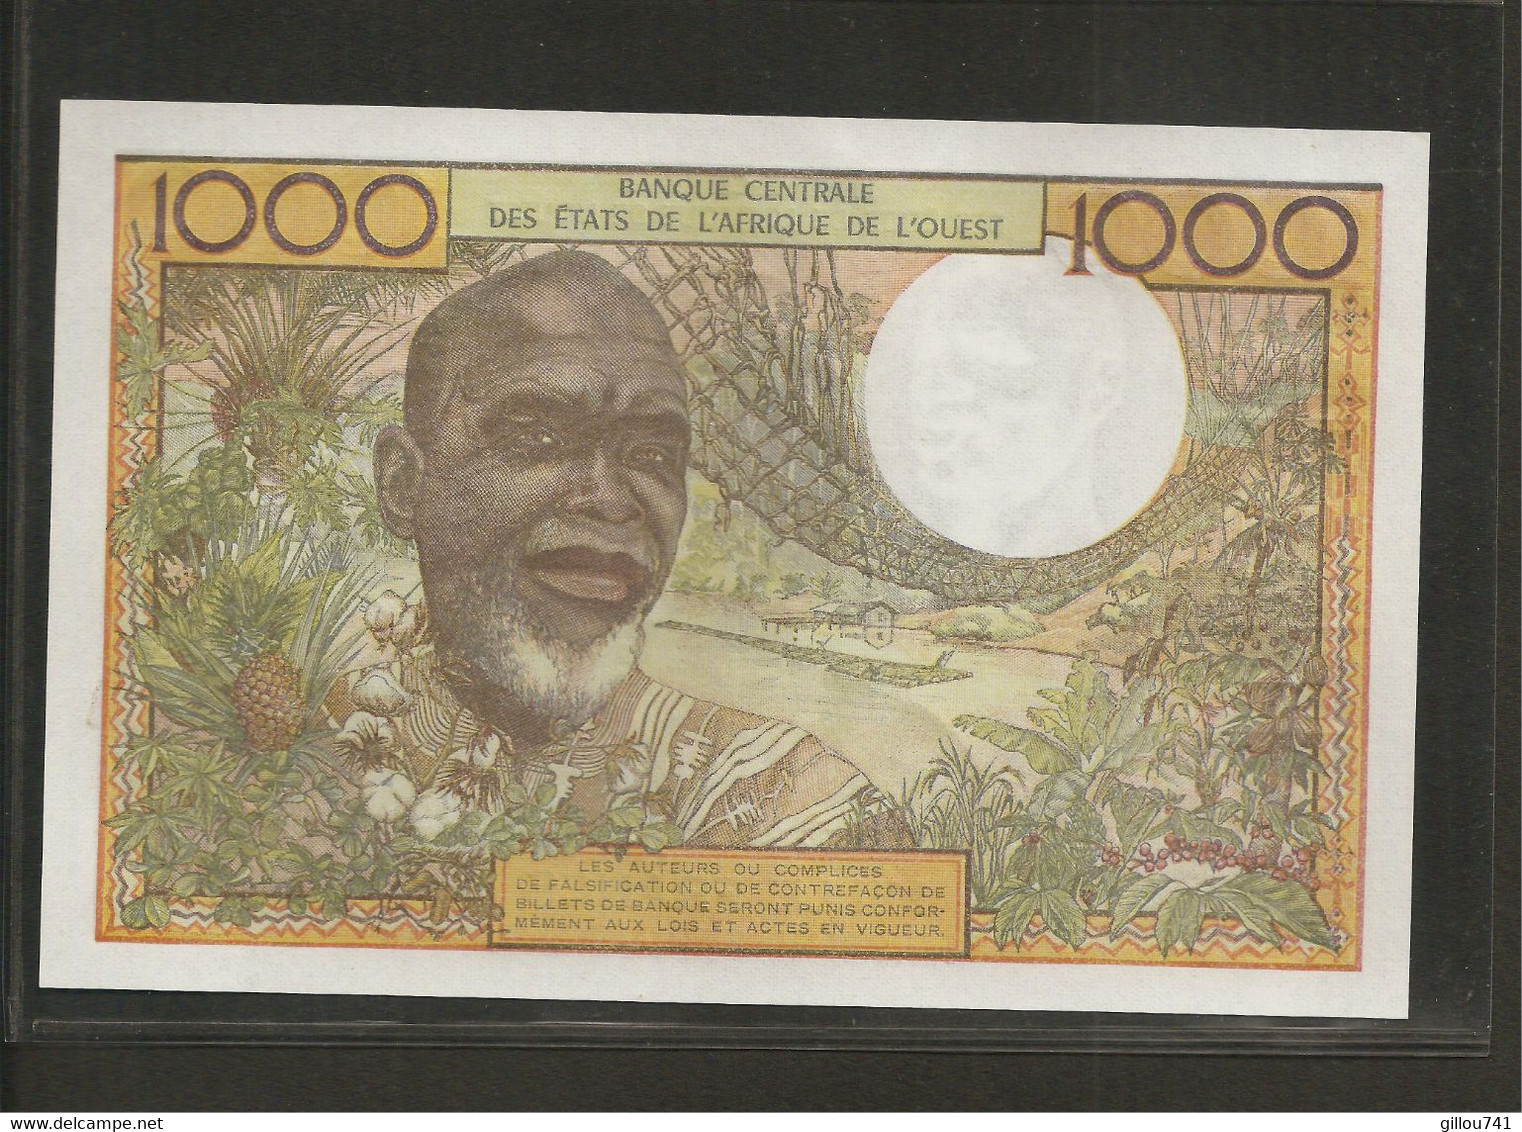 Afrique De L'Ouest (Etats D', 1,000 Francs, C For Burkina Faso - États D'Afrique De L'Ouest